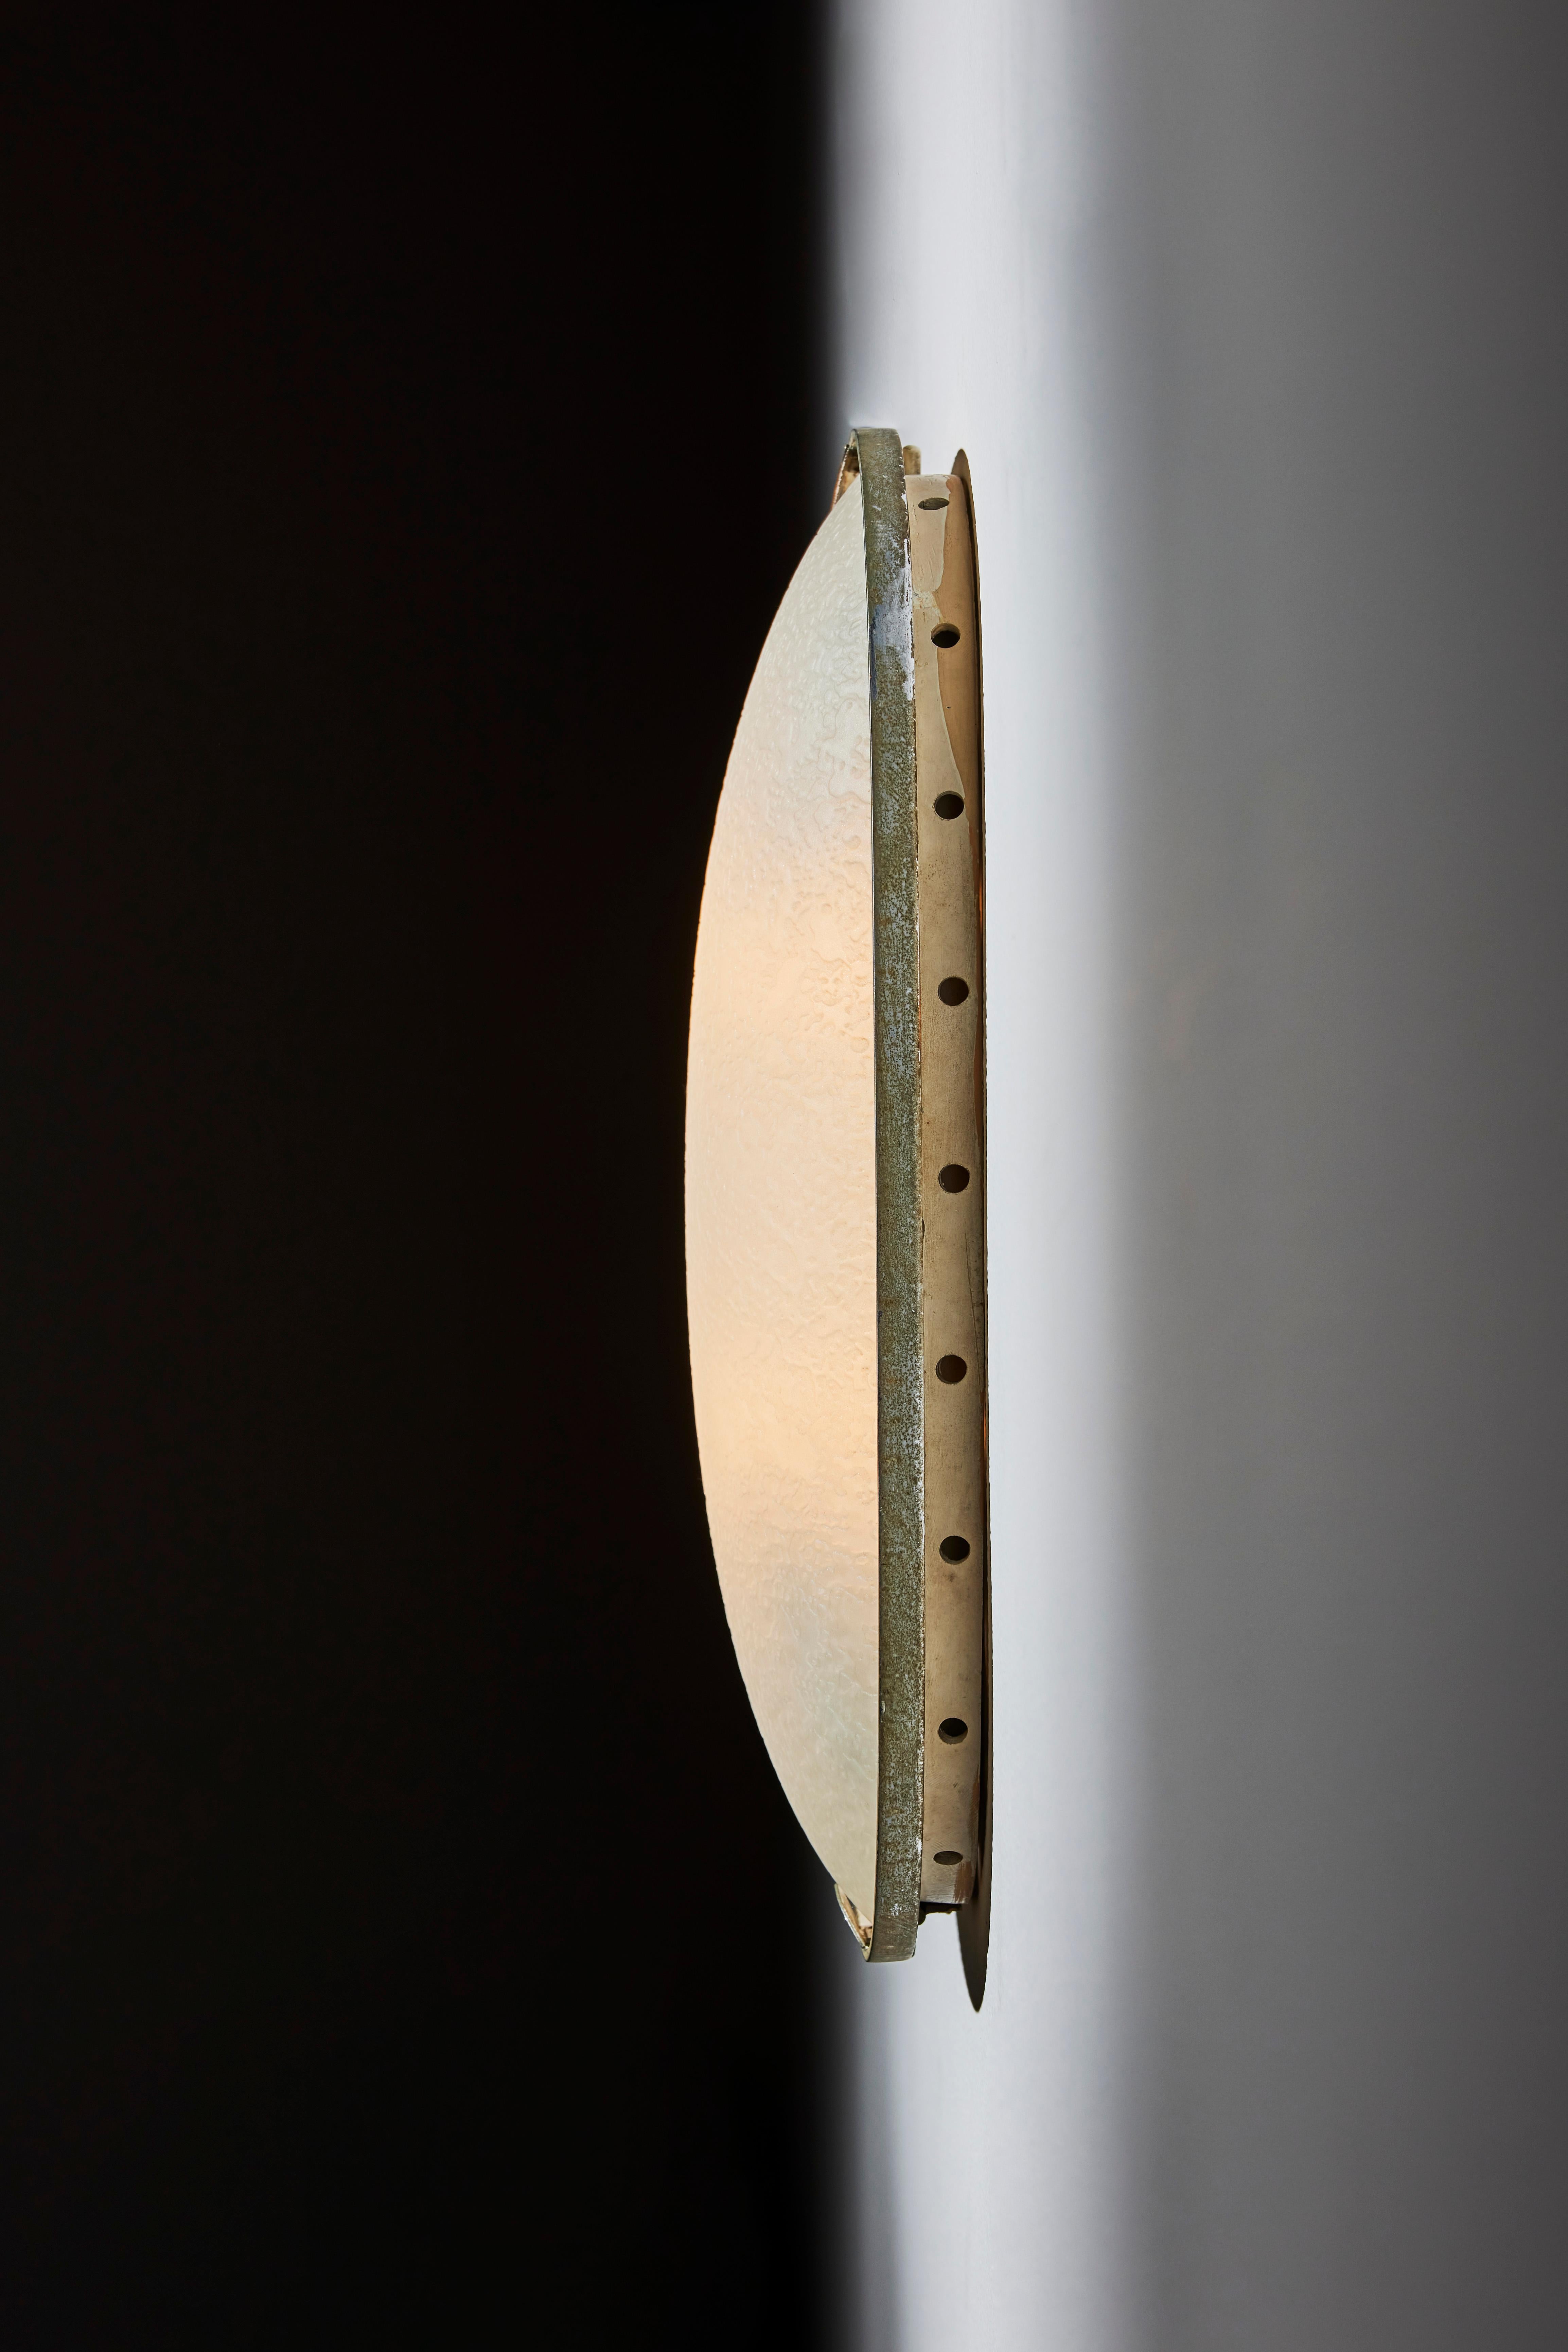 Glass Wall/Ceiling Light by Fontana Arte